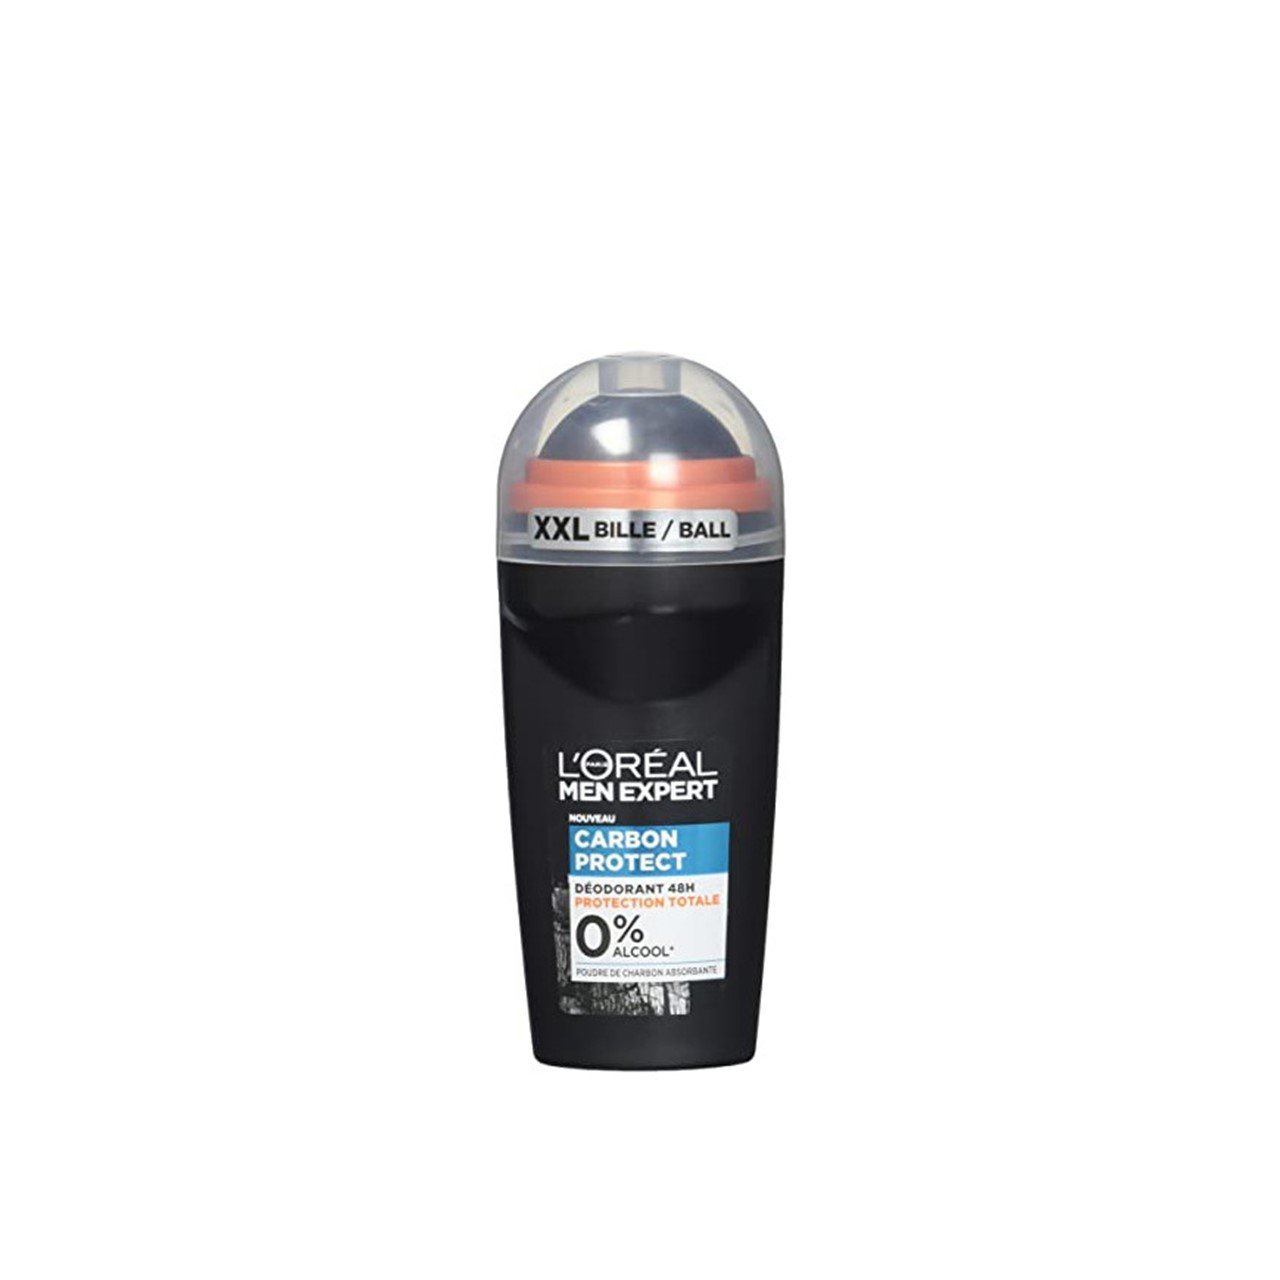 Tage med gyldige sur Buy L'Oréal Paris Men Expert Carbon Protect 48h Deodorant 50ml (1.69fl oz)  · USA